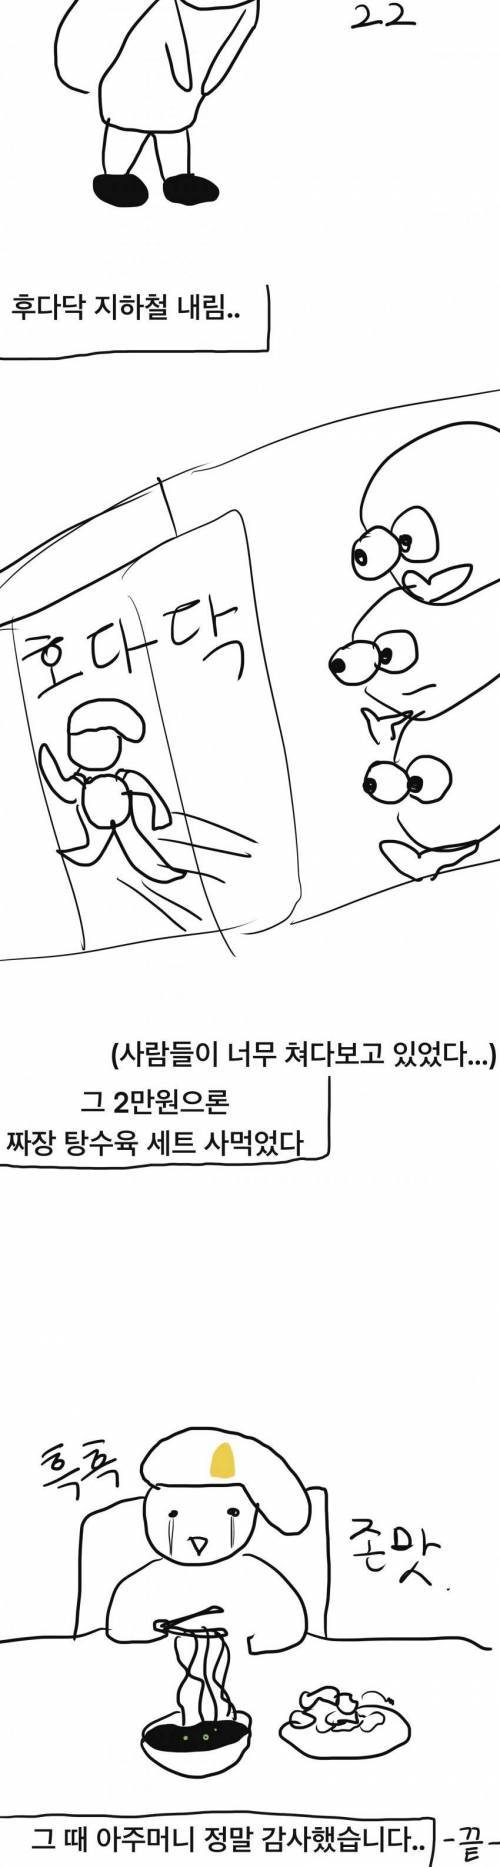 [스압] 지하철에서 모르는 아주머니한테 2만원 받은 썰.manhwa